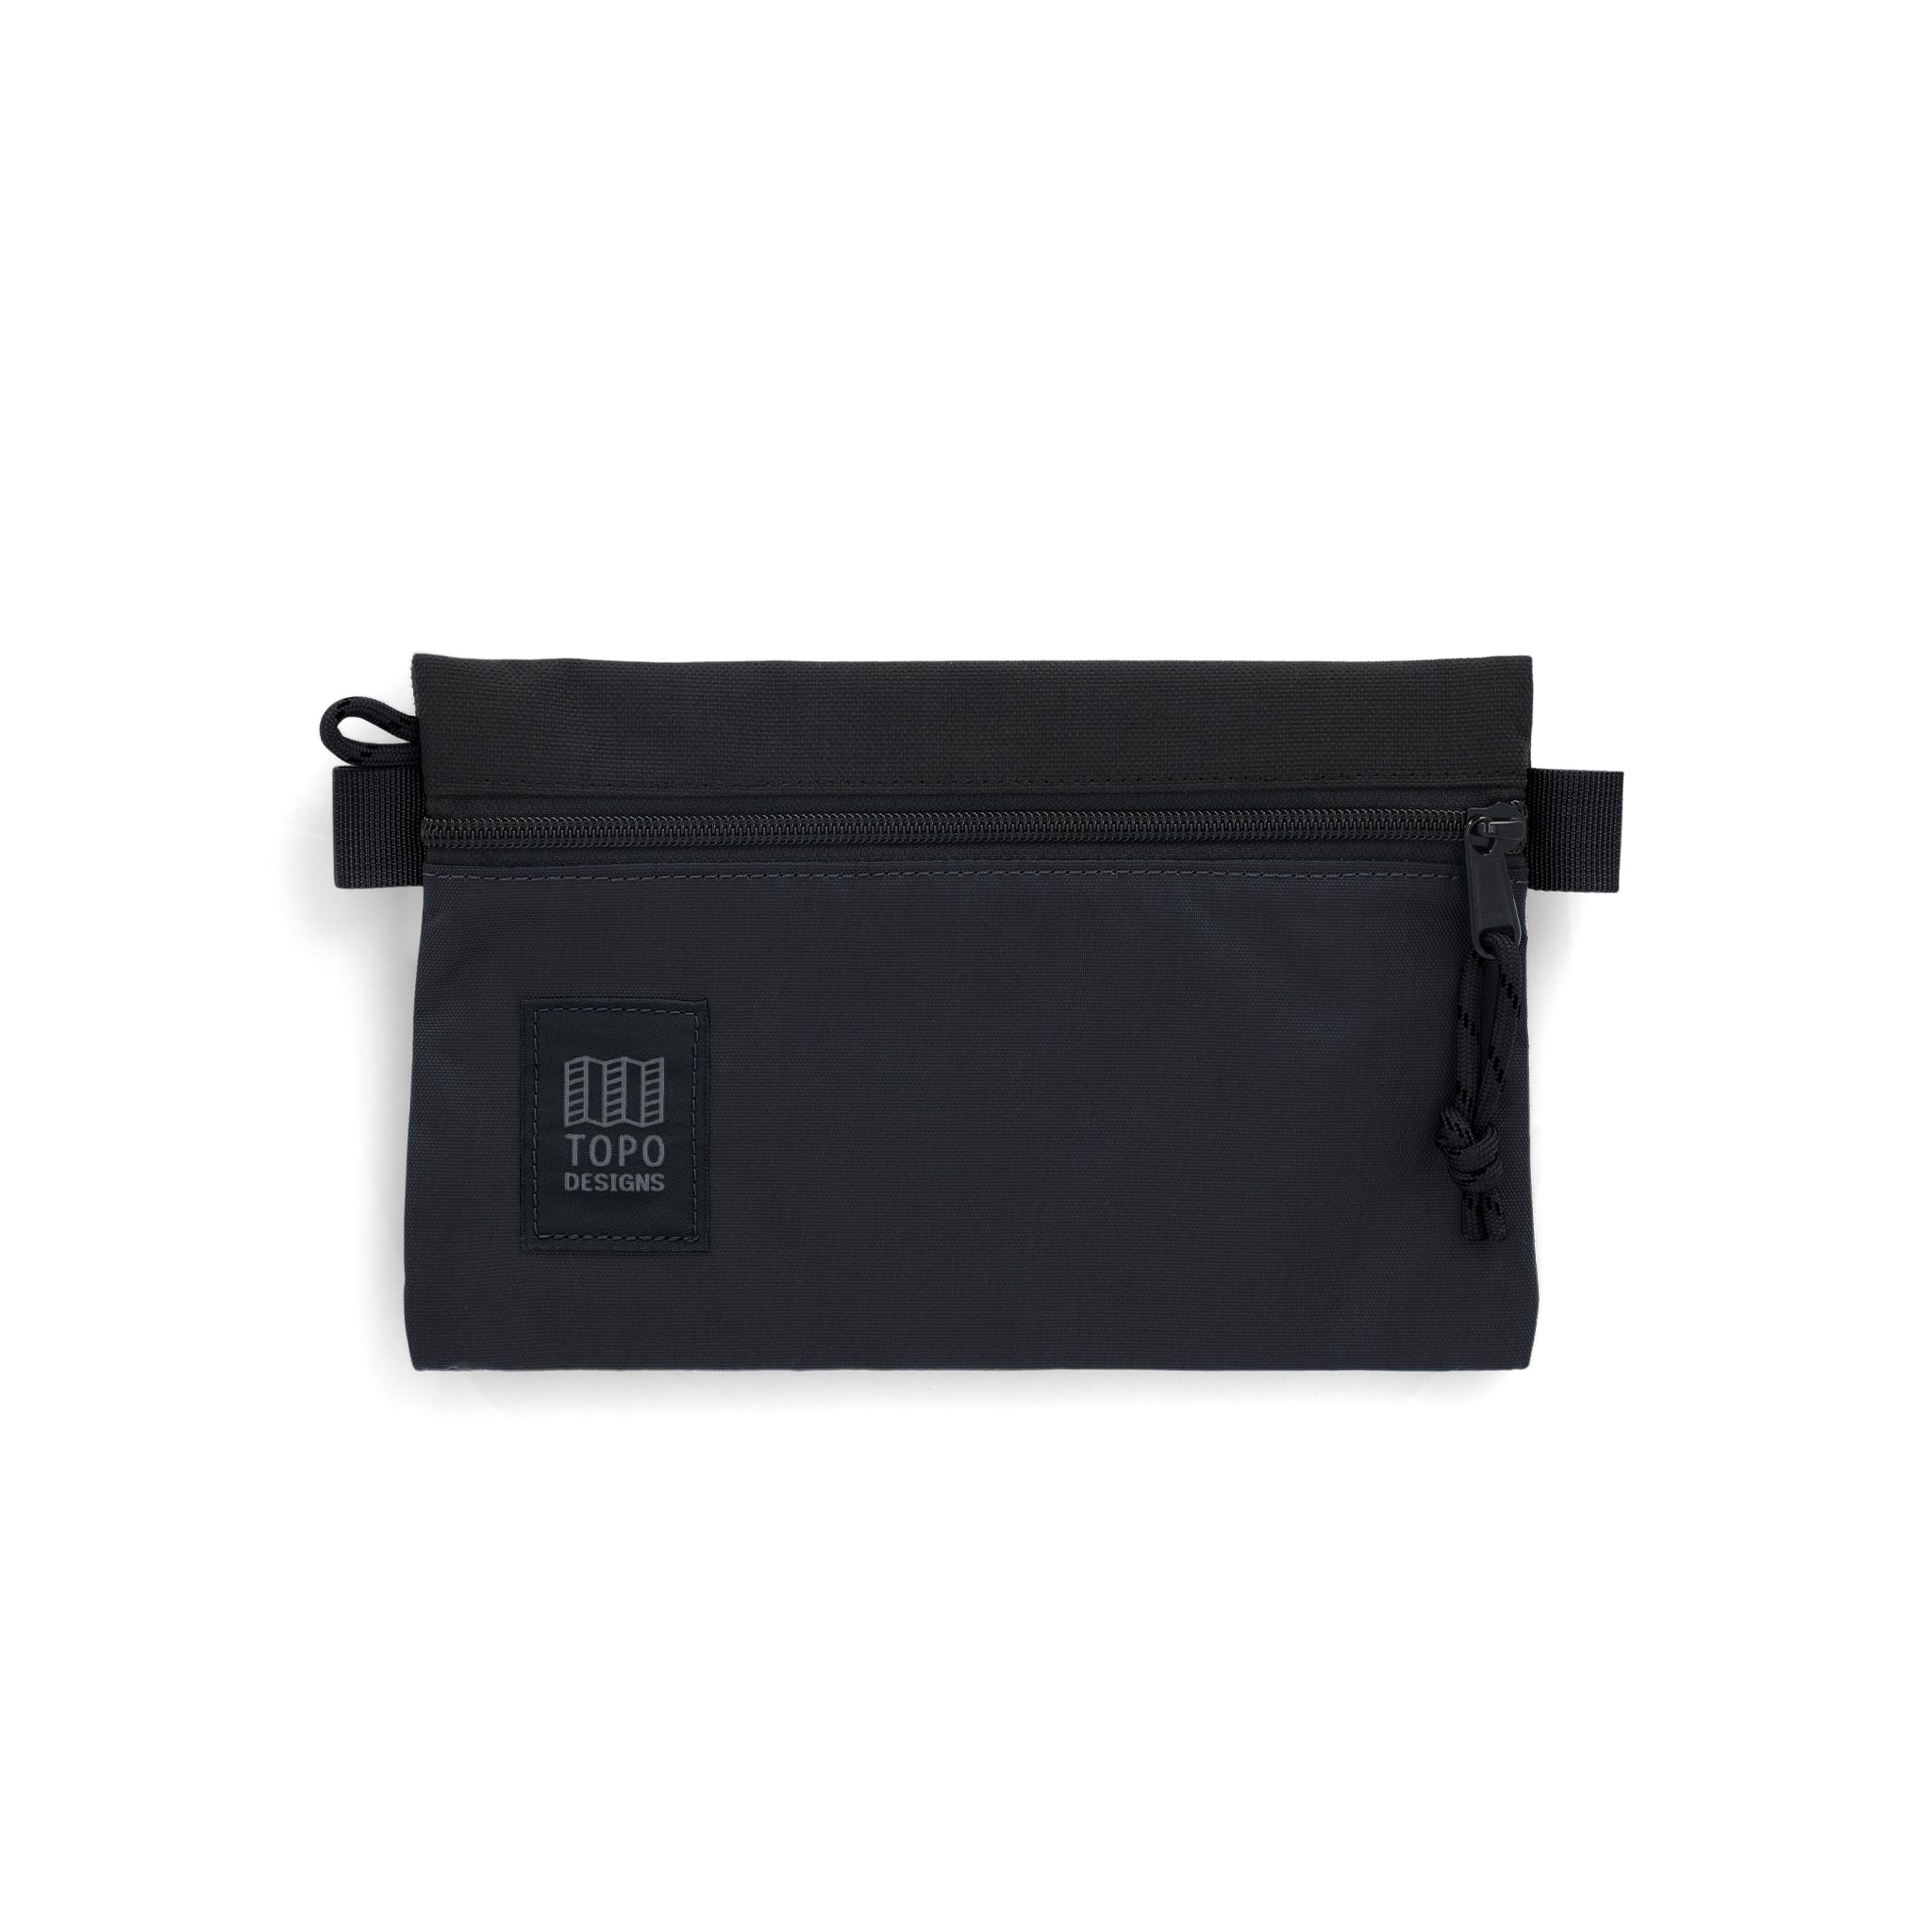 Topo Designs Accessory Bag Small in "Black / Black"